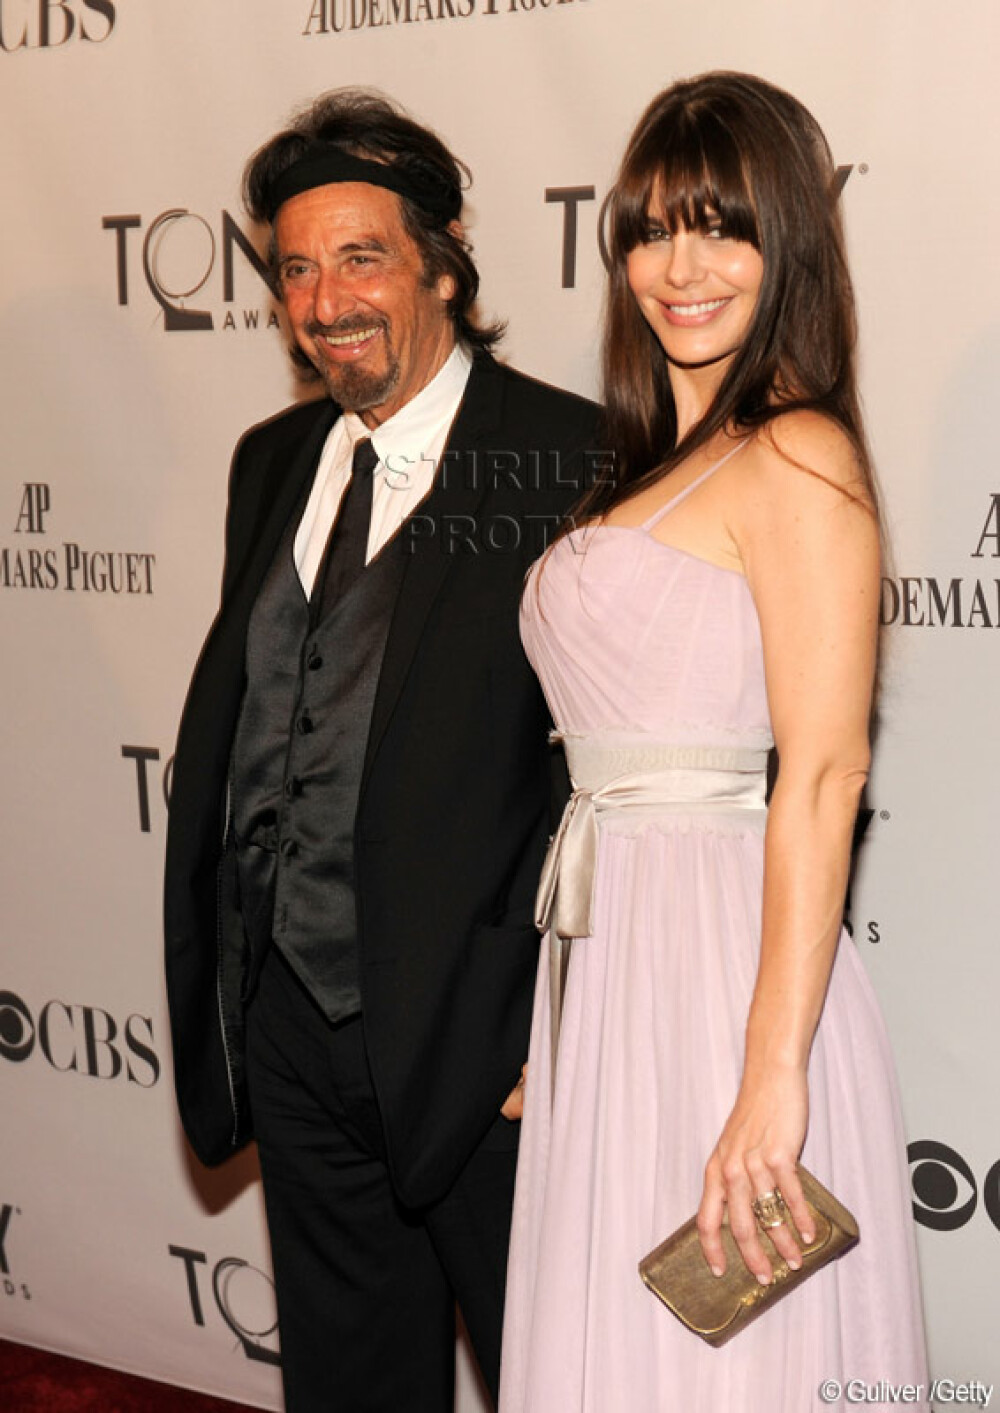 La 71 de ani, Al Pacino e cel mai invidiat pe covorul rosu. Are iubita cu 40 de ani mai tanara. FOTO - Imaginea 1